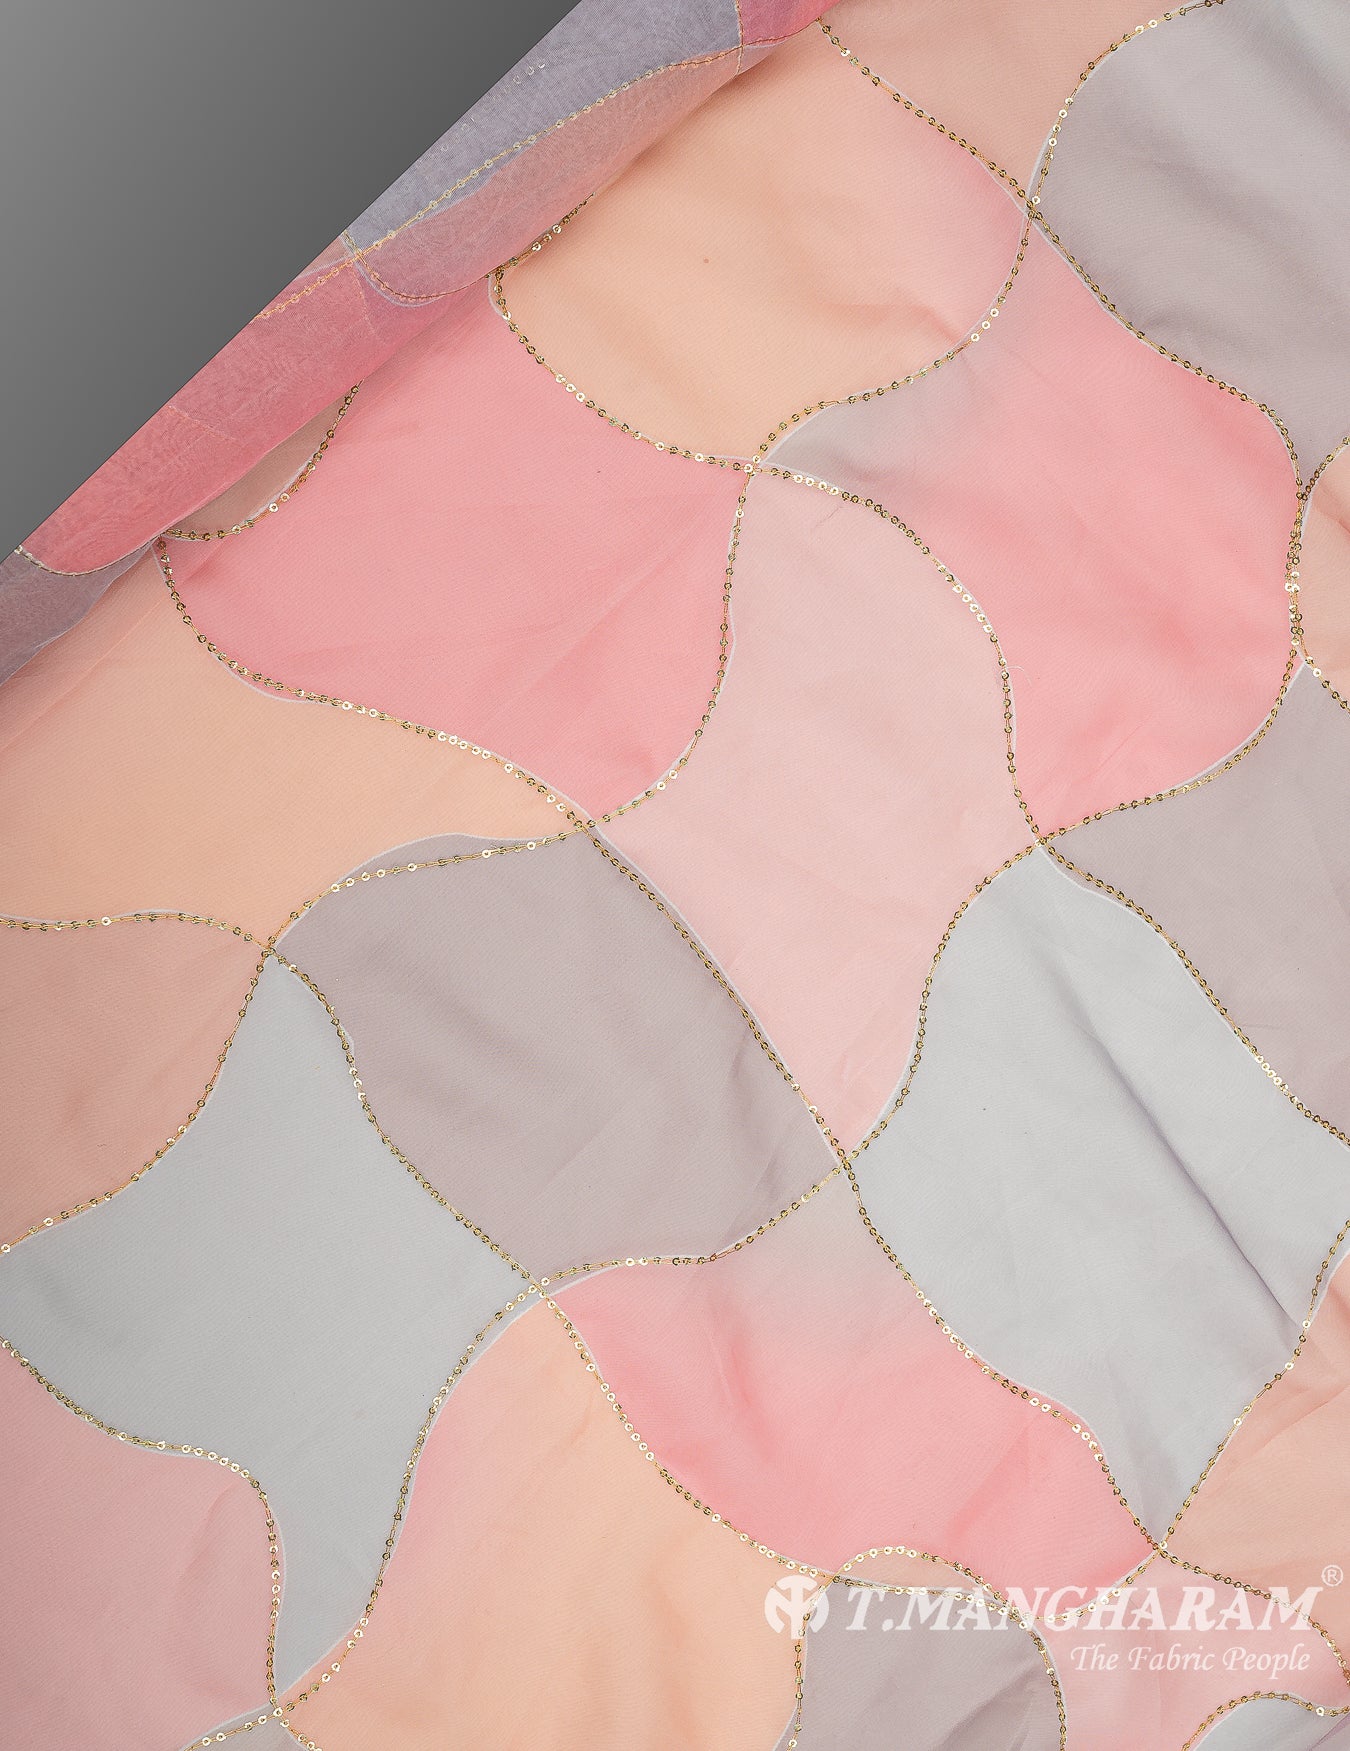 Multicolor Organza Tissue Fabric - EC9821 view-2